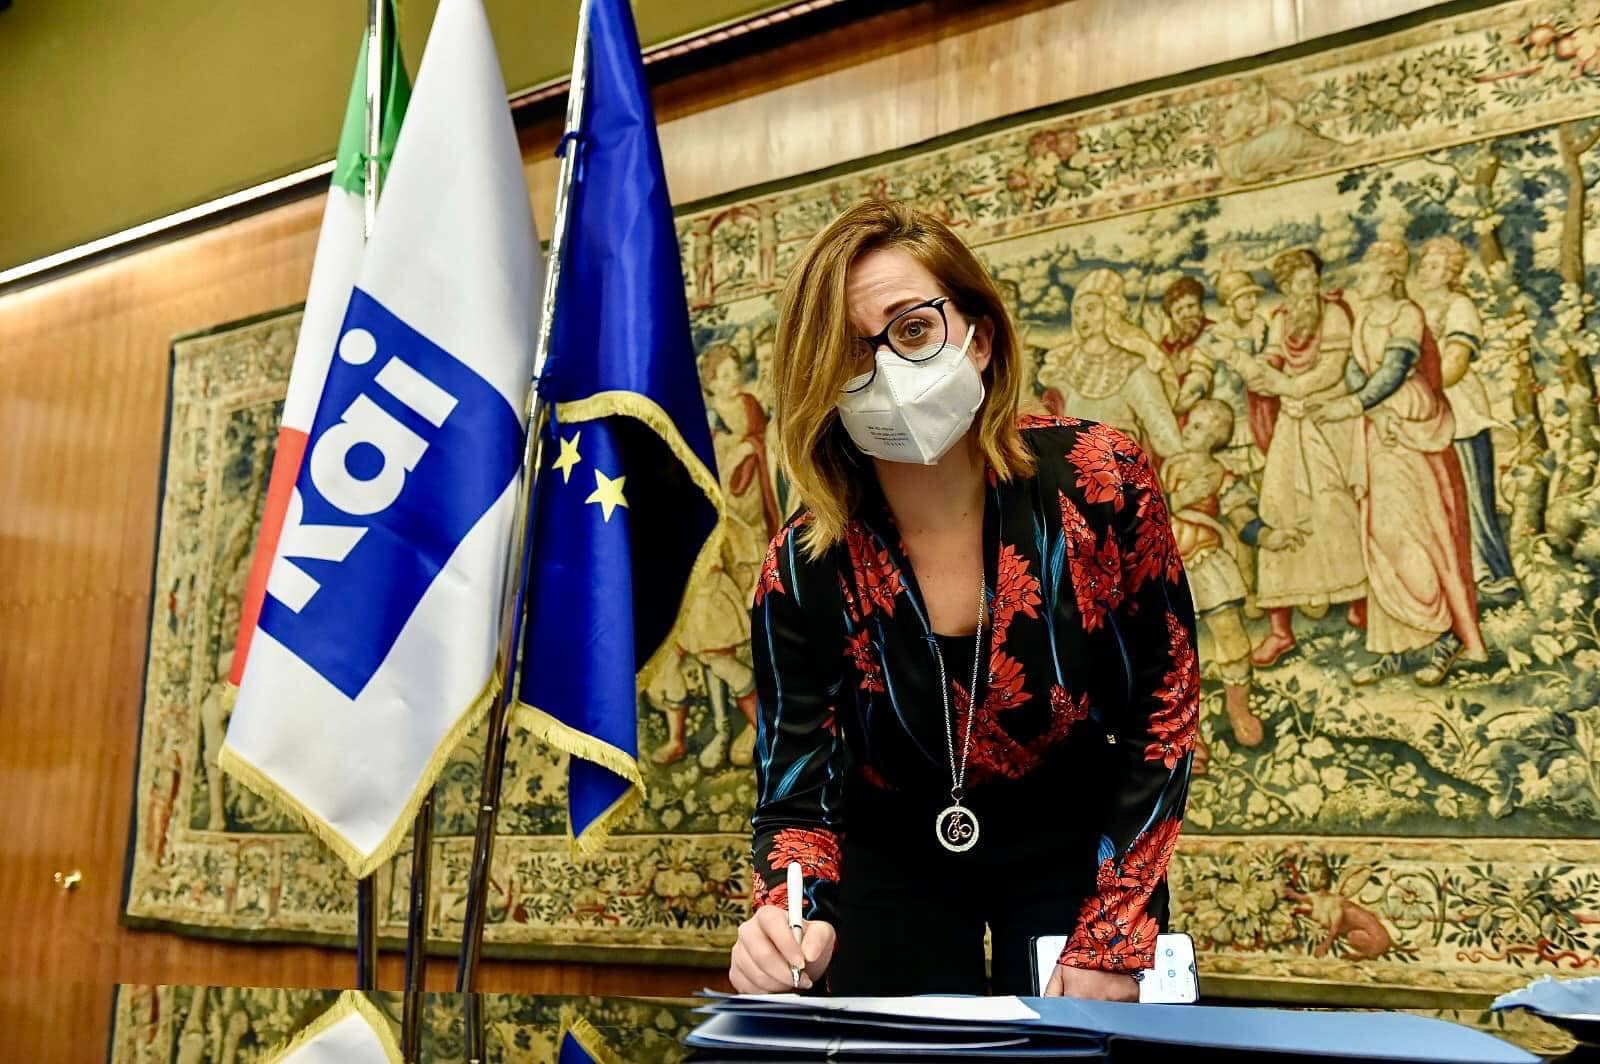 TERMINI IMERESE: Il sindaco Maria Terranova sottoscrive il memorandum di intesa “No Women No Panel”